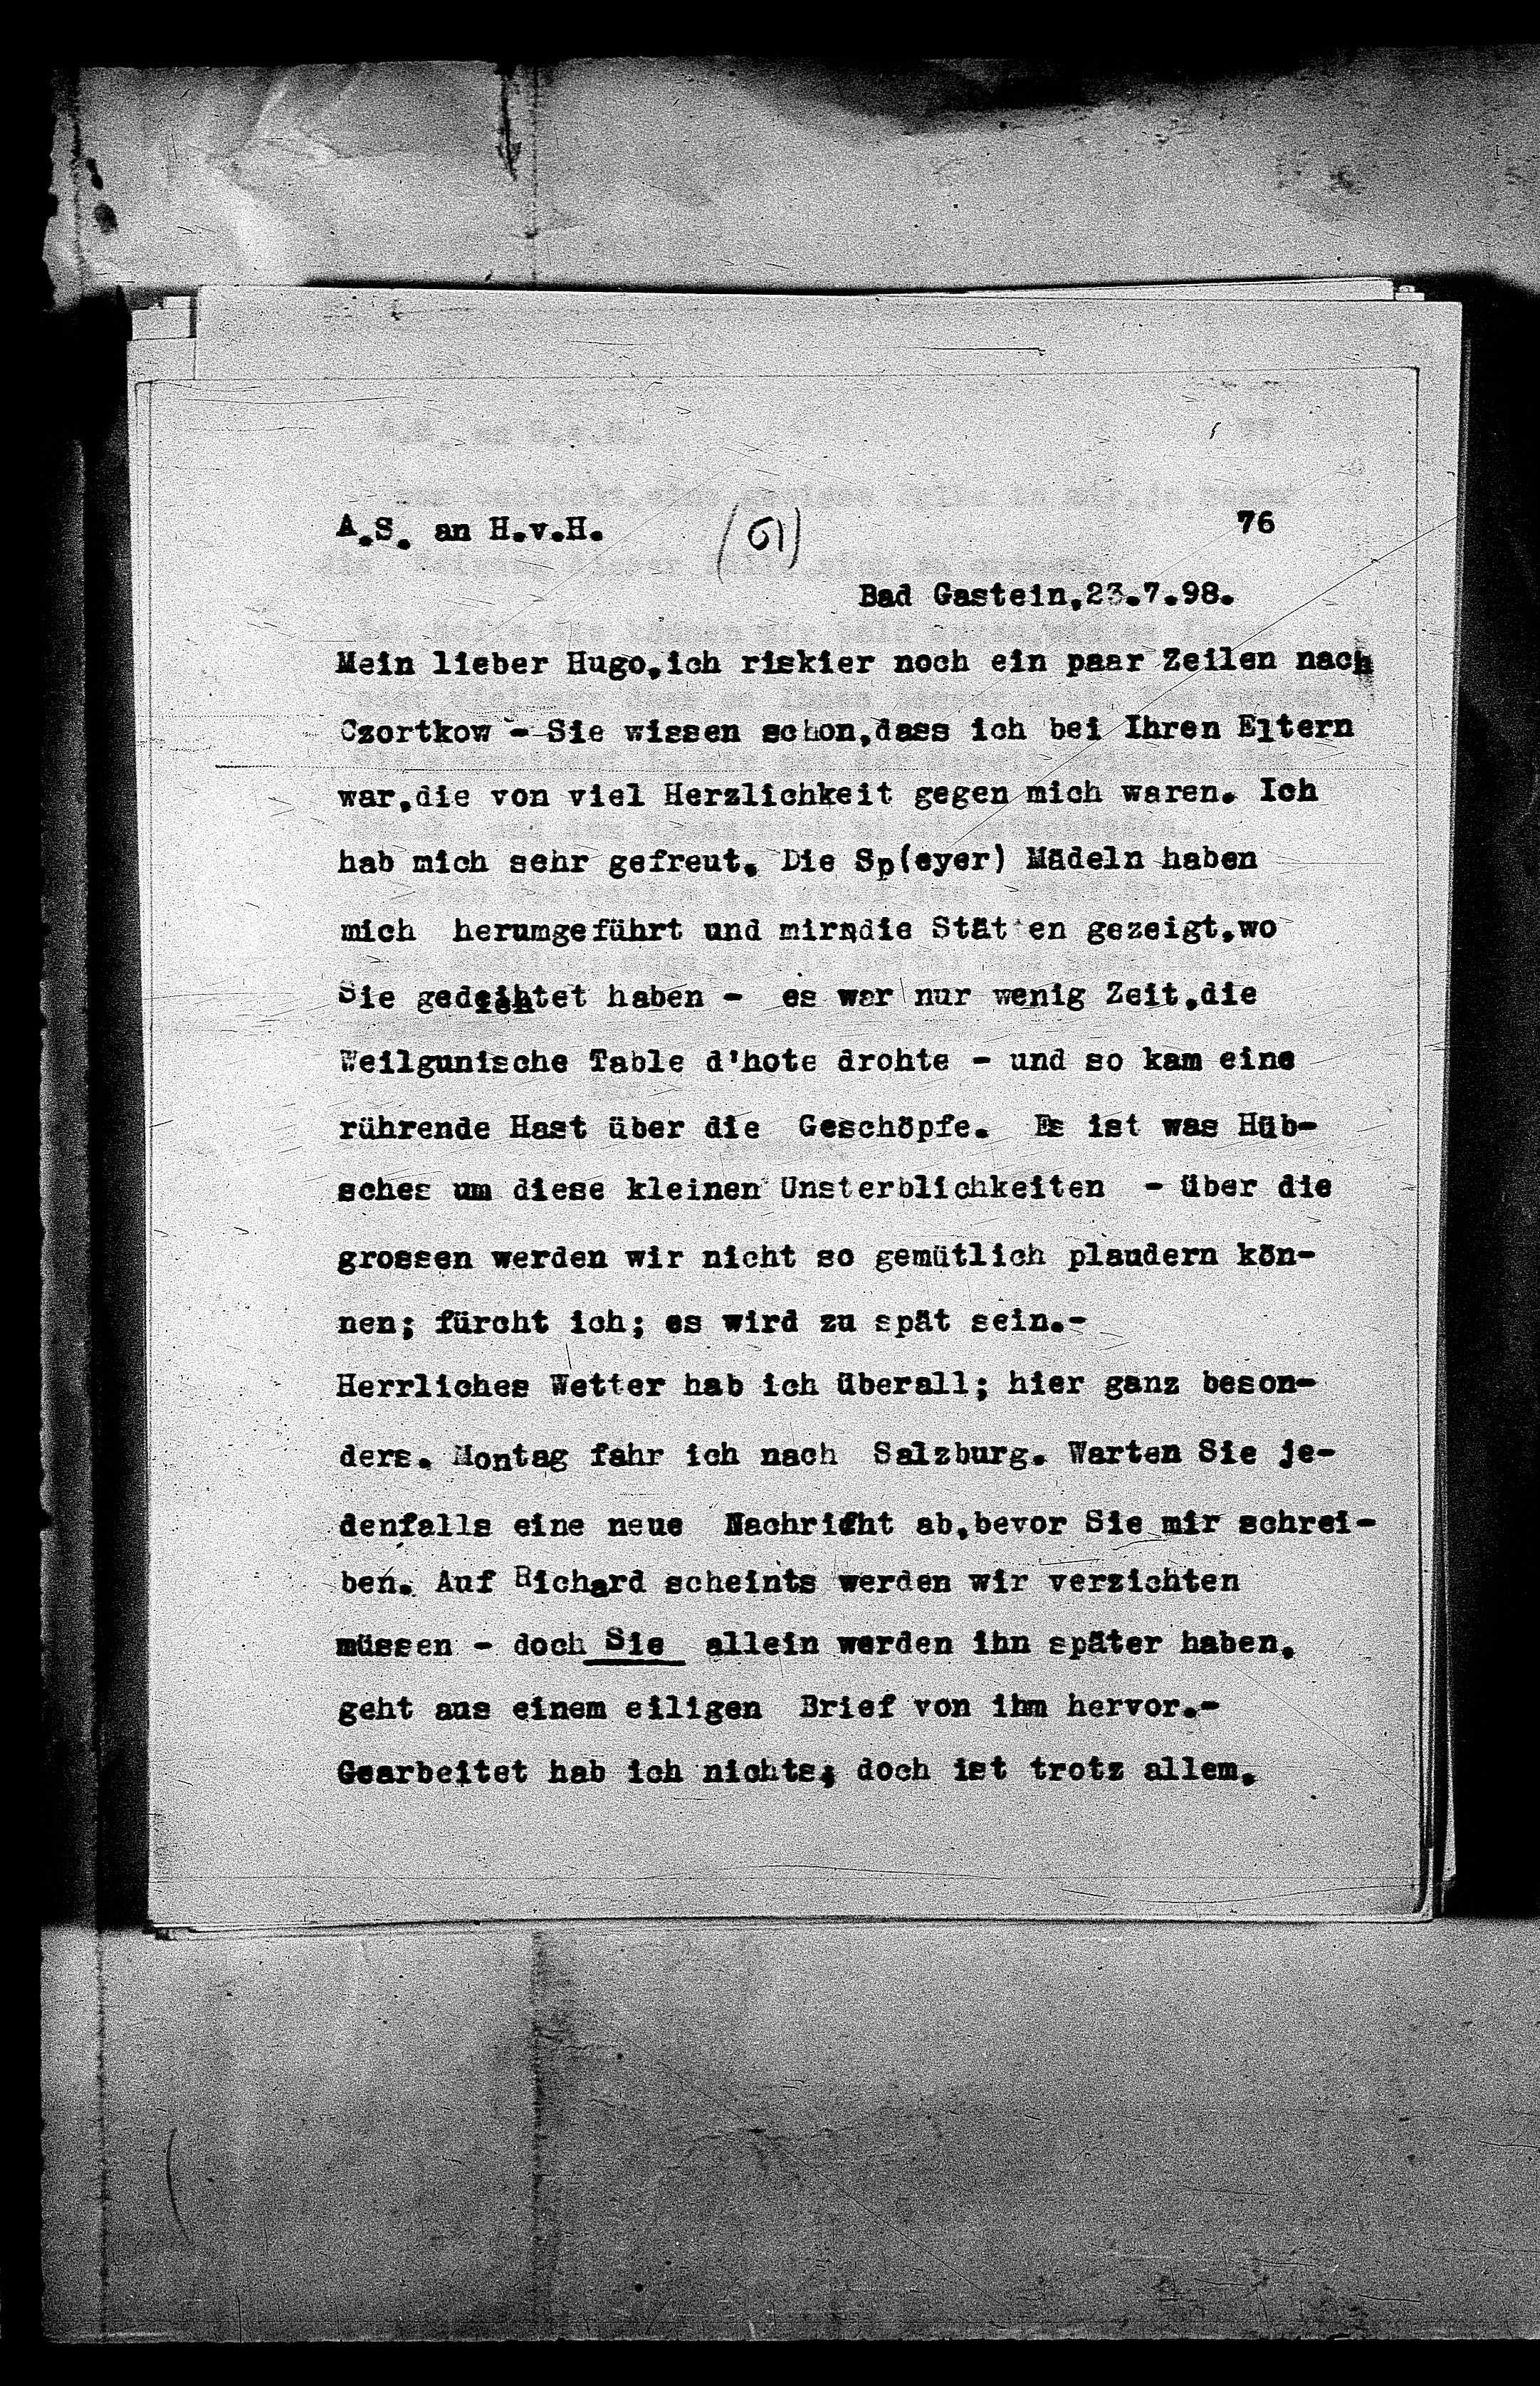 Vorschaubild für Hofmannsthal, Hugo von_AS an HvH Abschrift, HvH an AS, Originale (Mikrofilm 38), Seite 79